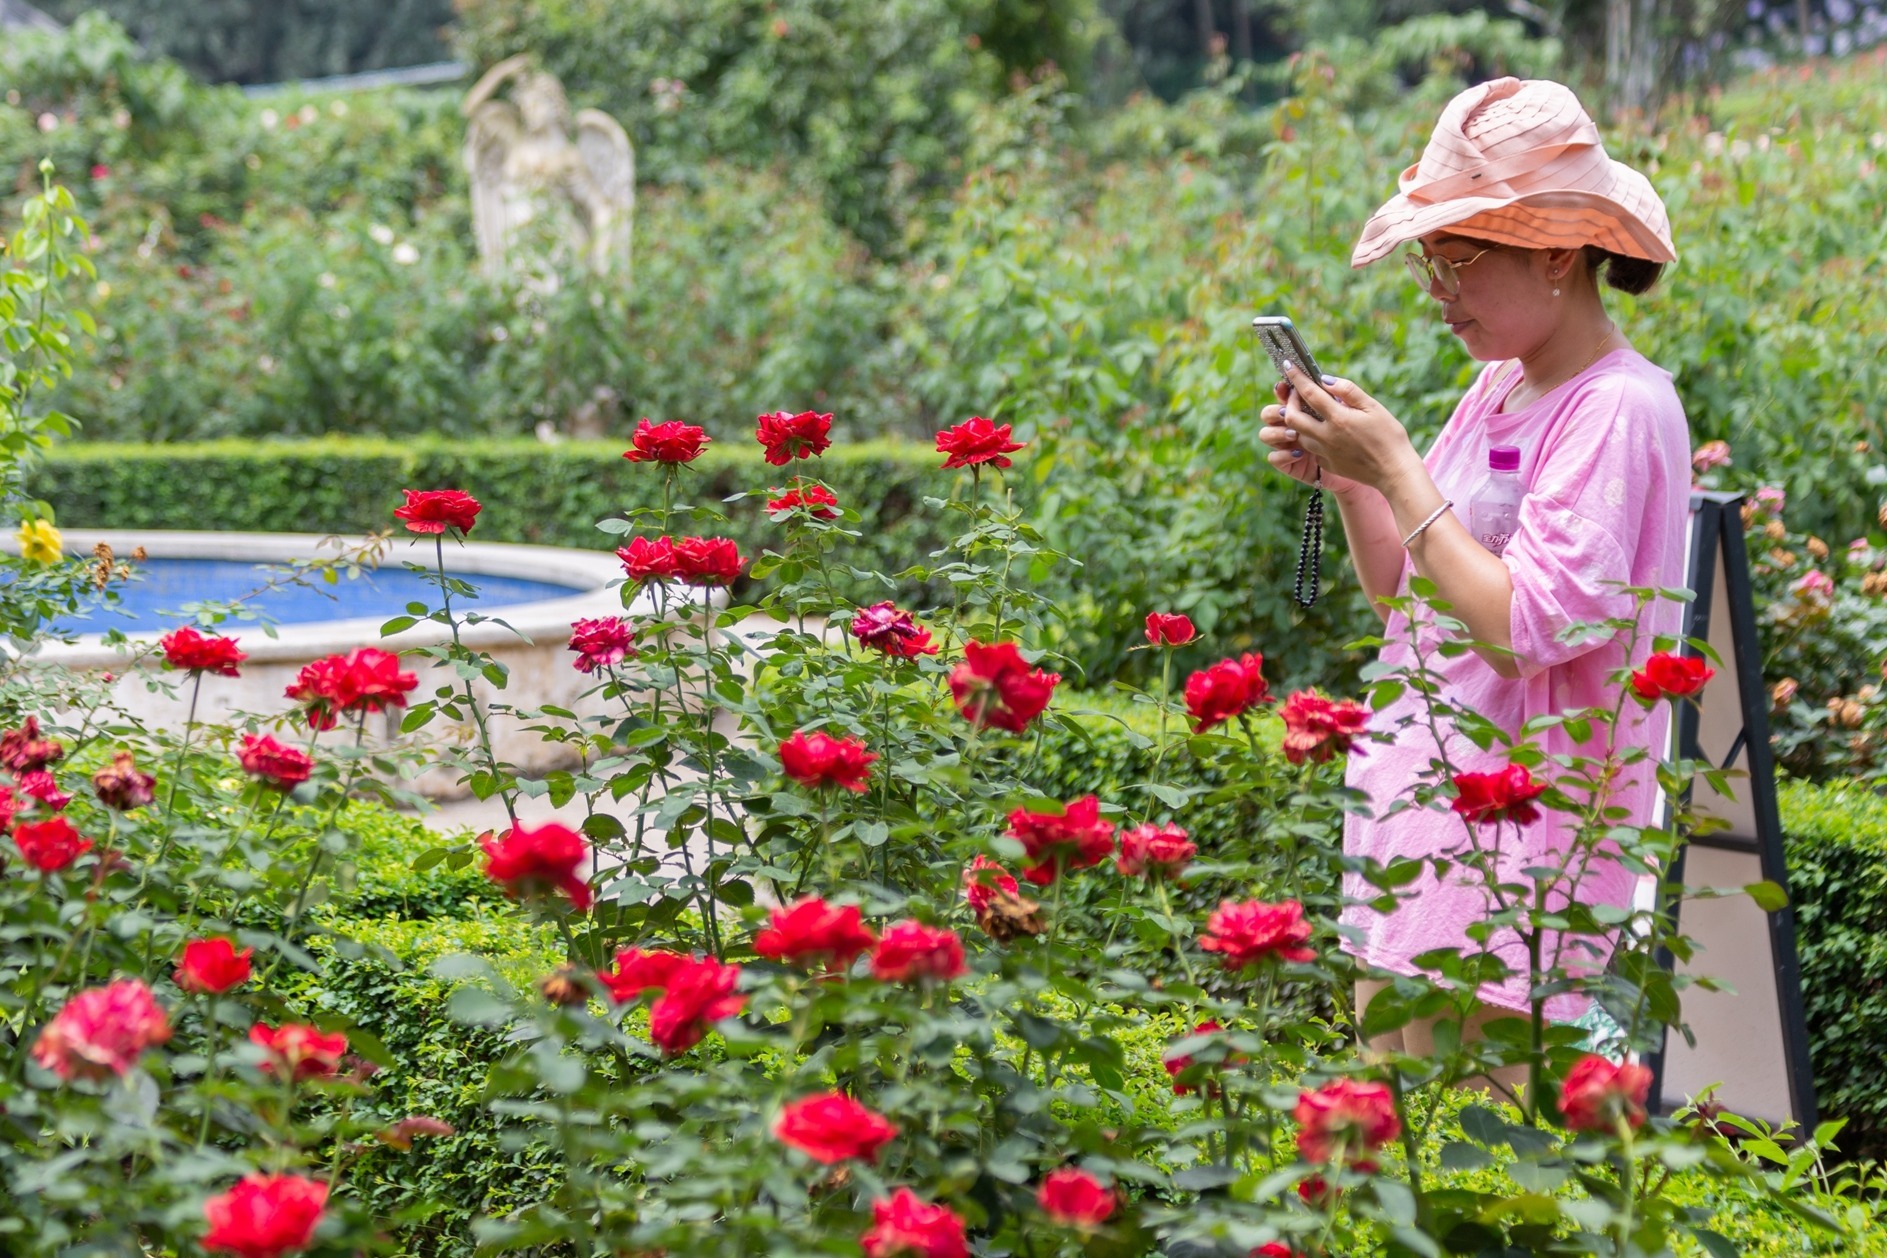 盛夏 成都漫花庄园700余种欧洲玫瑰竞相绽放